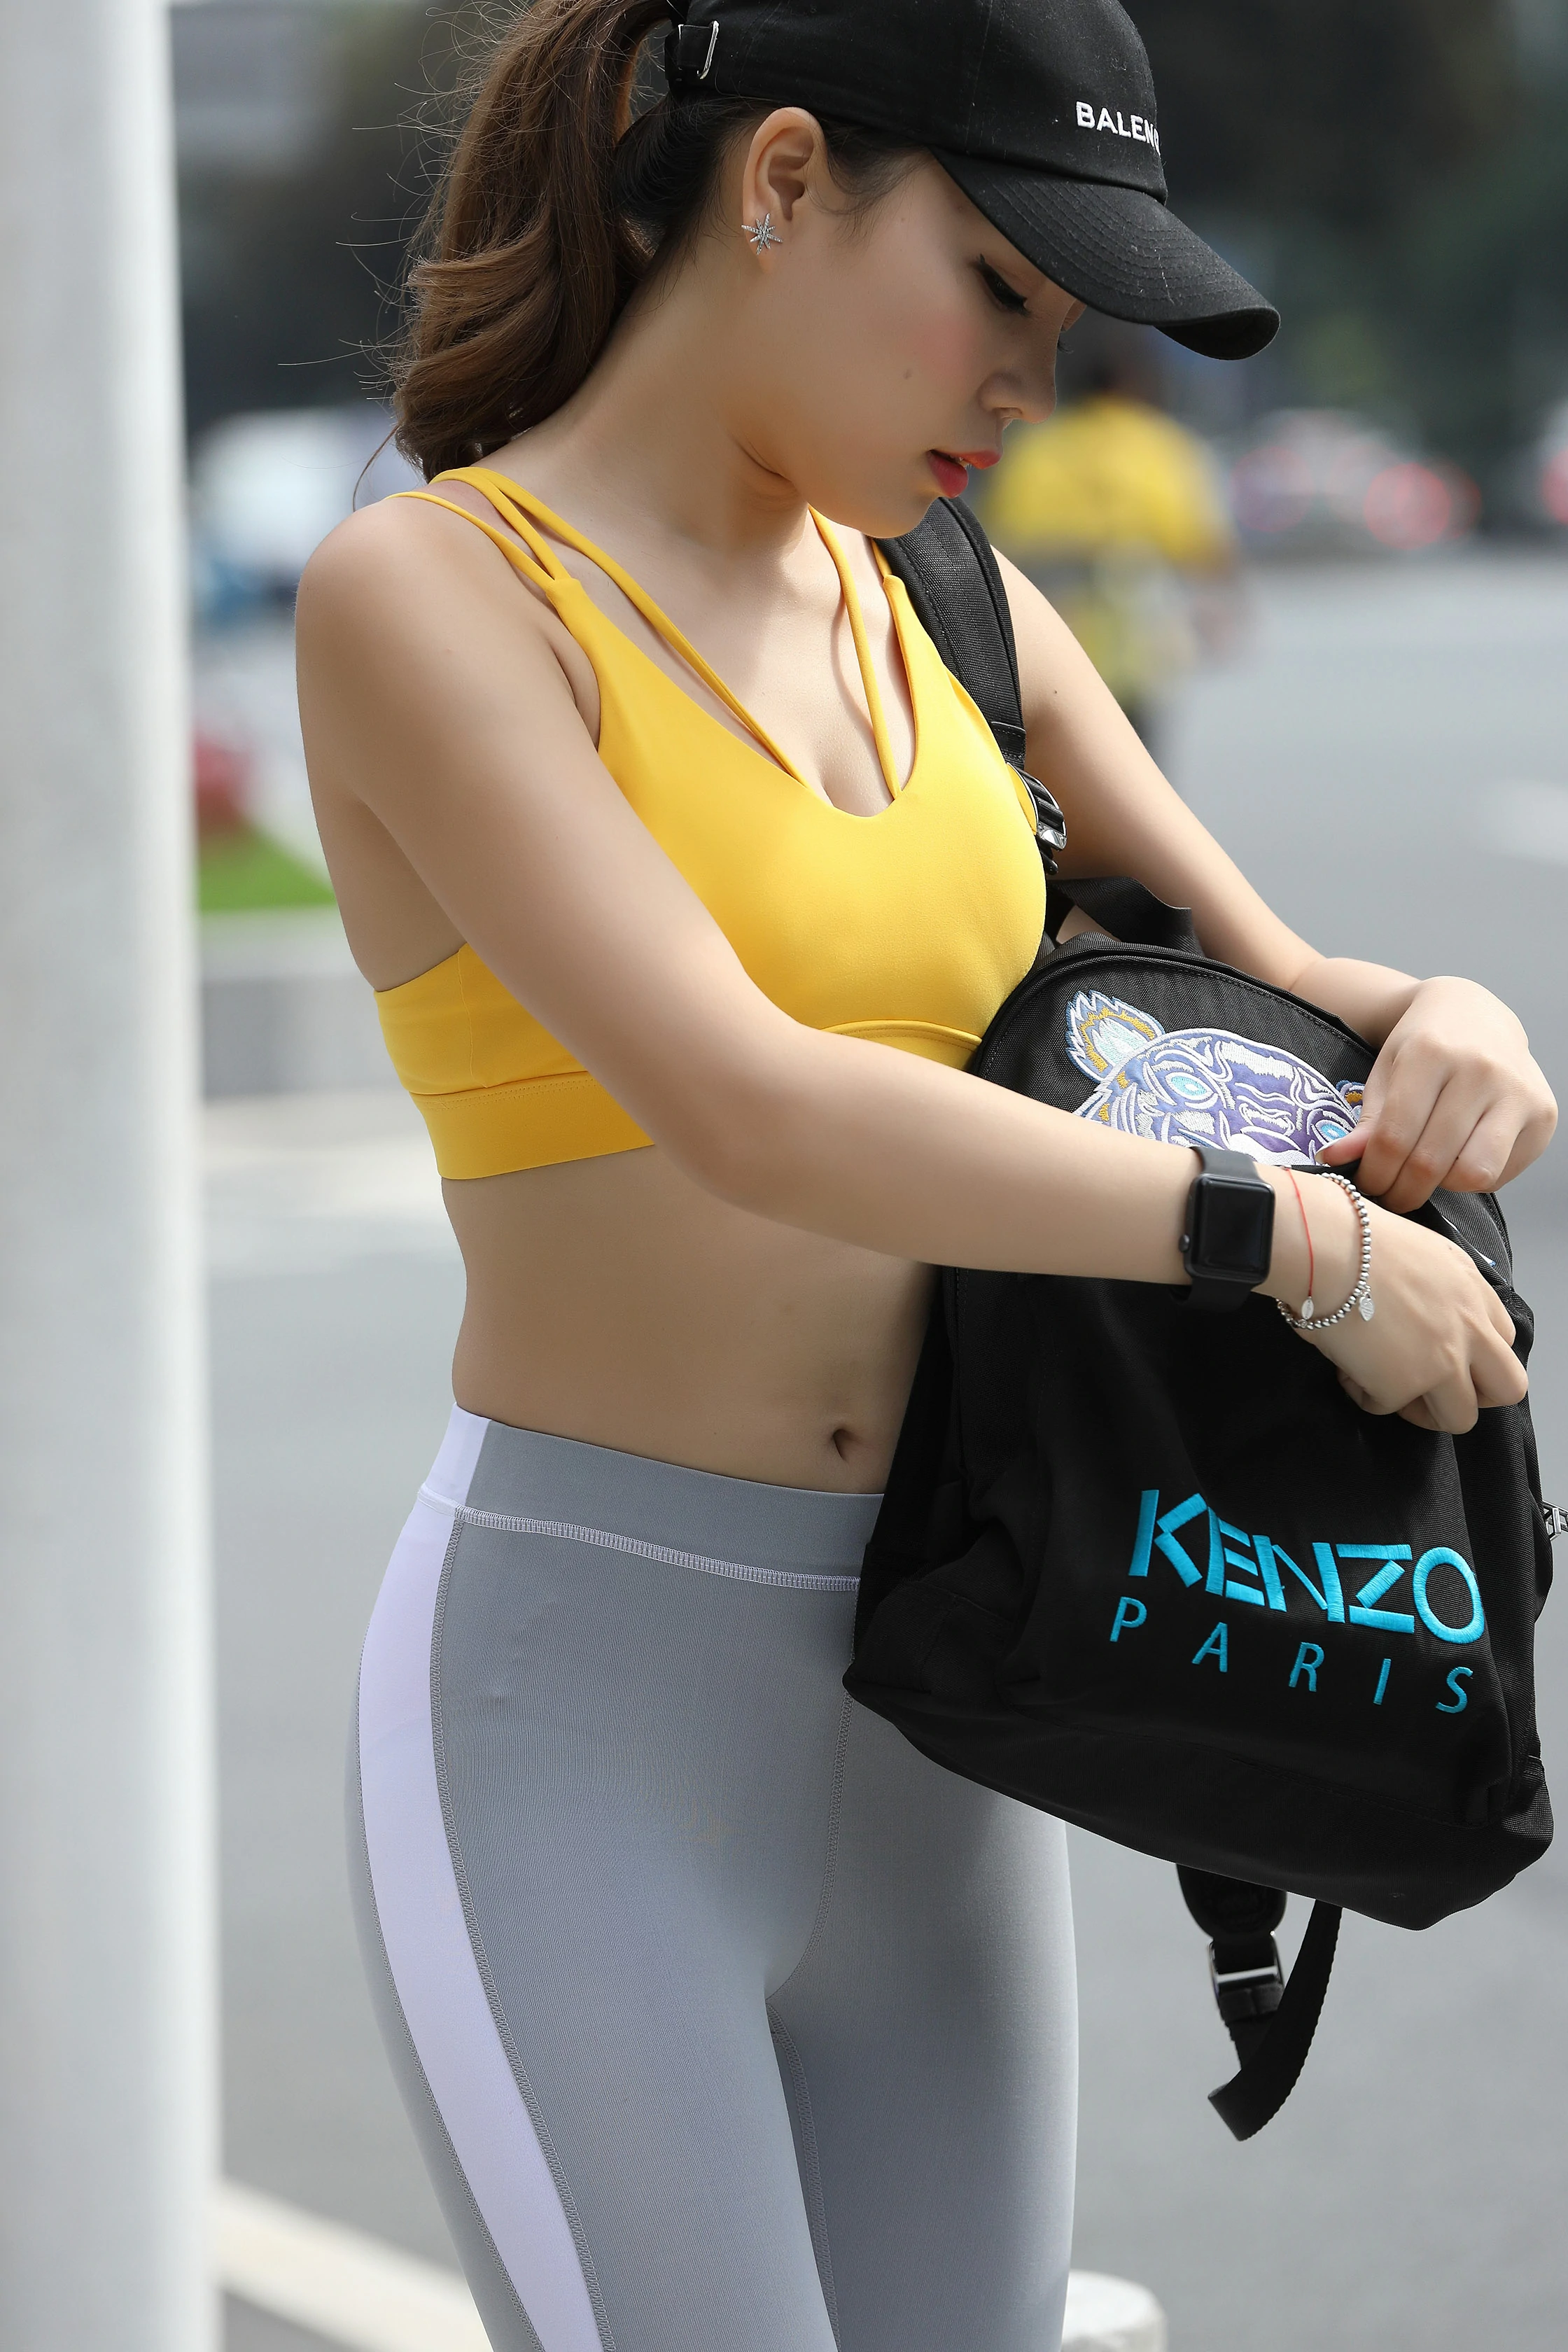 [精选]NO.0003 芝士健身熟女 黄色运动内衣加灰色紧身瑜伽裤性感写真集,0152